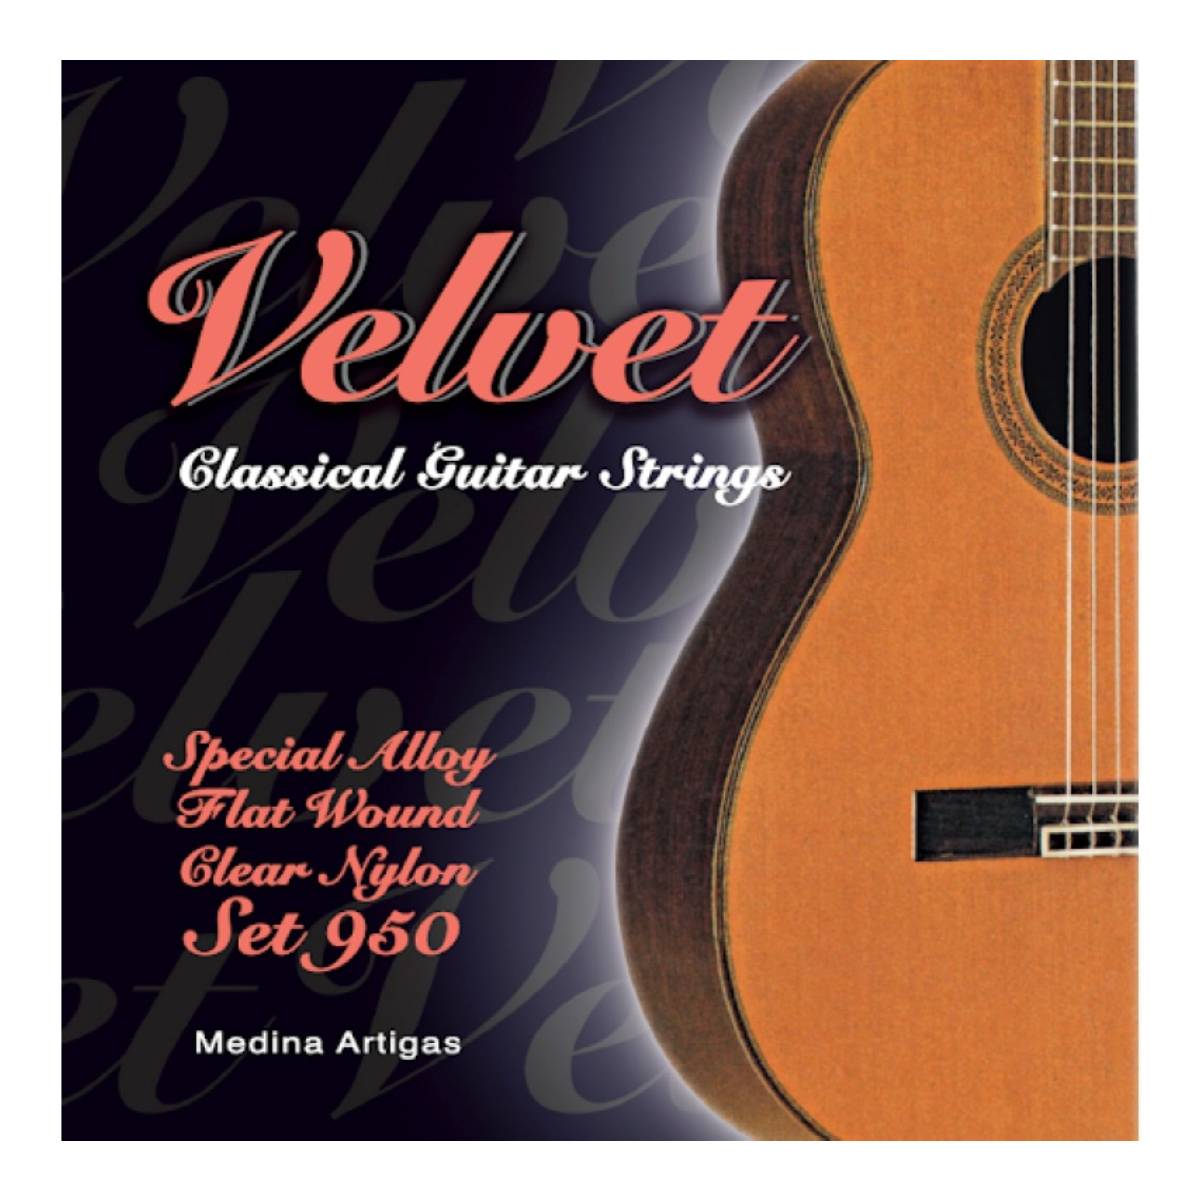 Encordado guitarra clásica Medina Artigas Velvet 950